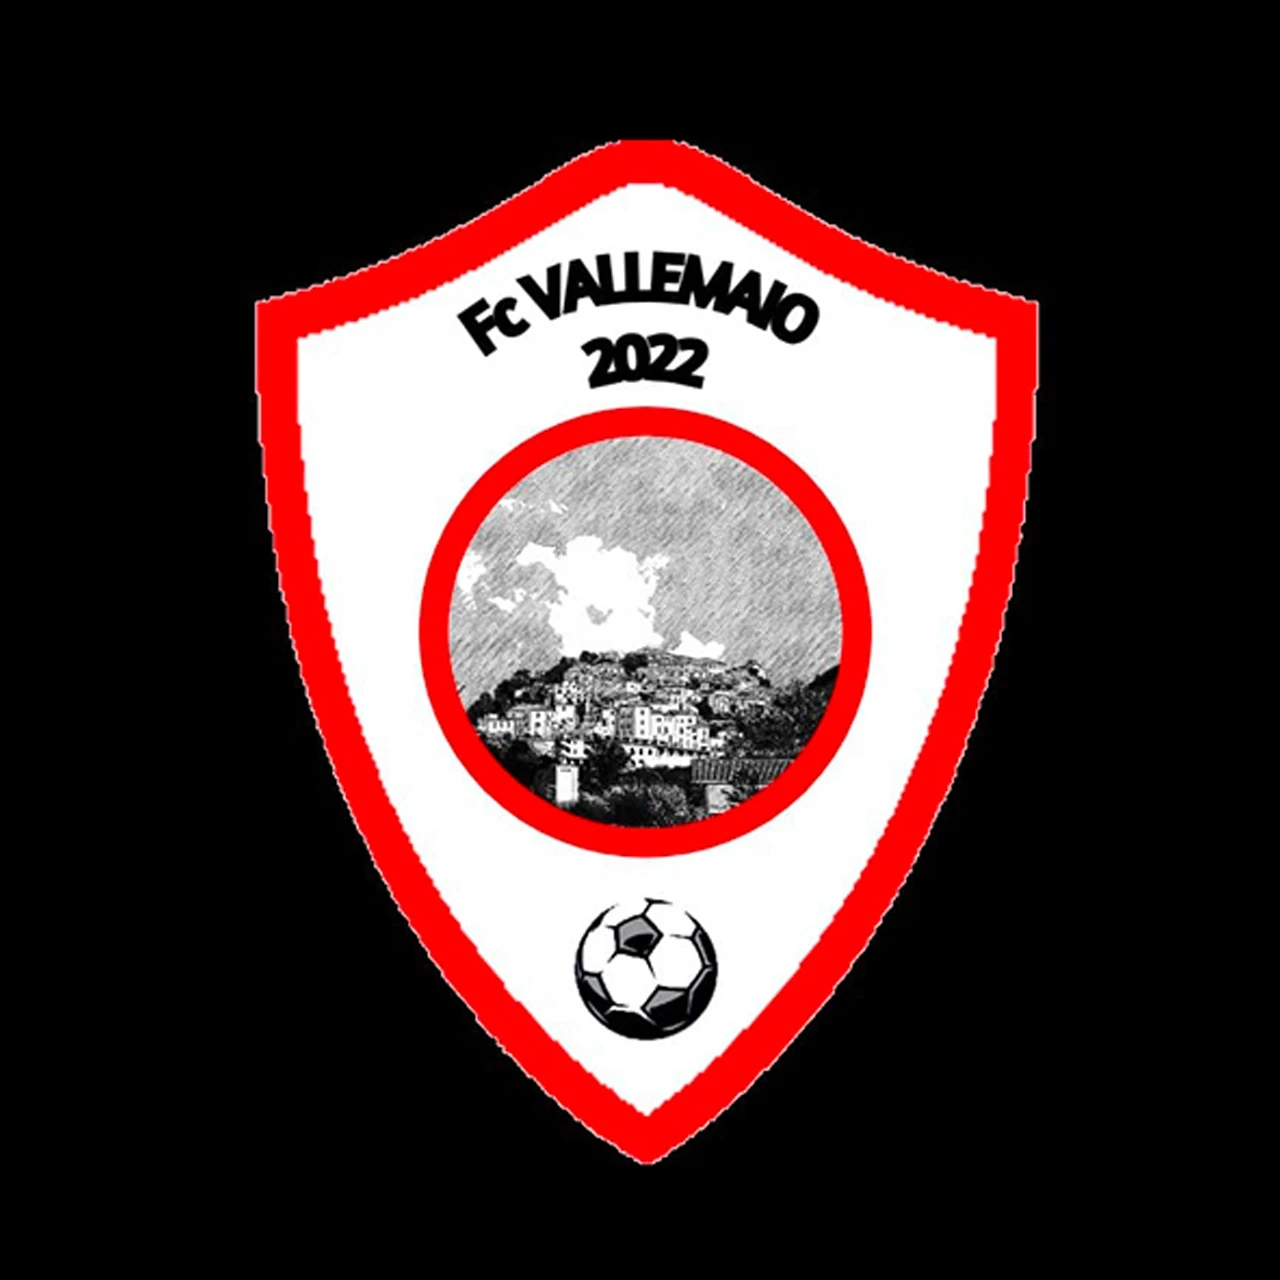 F.C. Vallemaio 2022